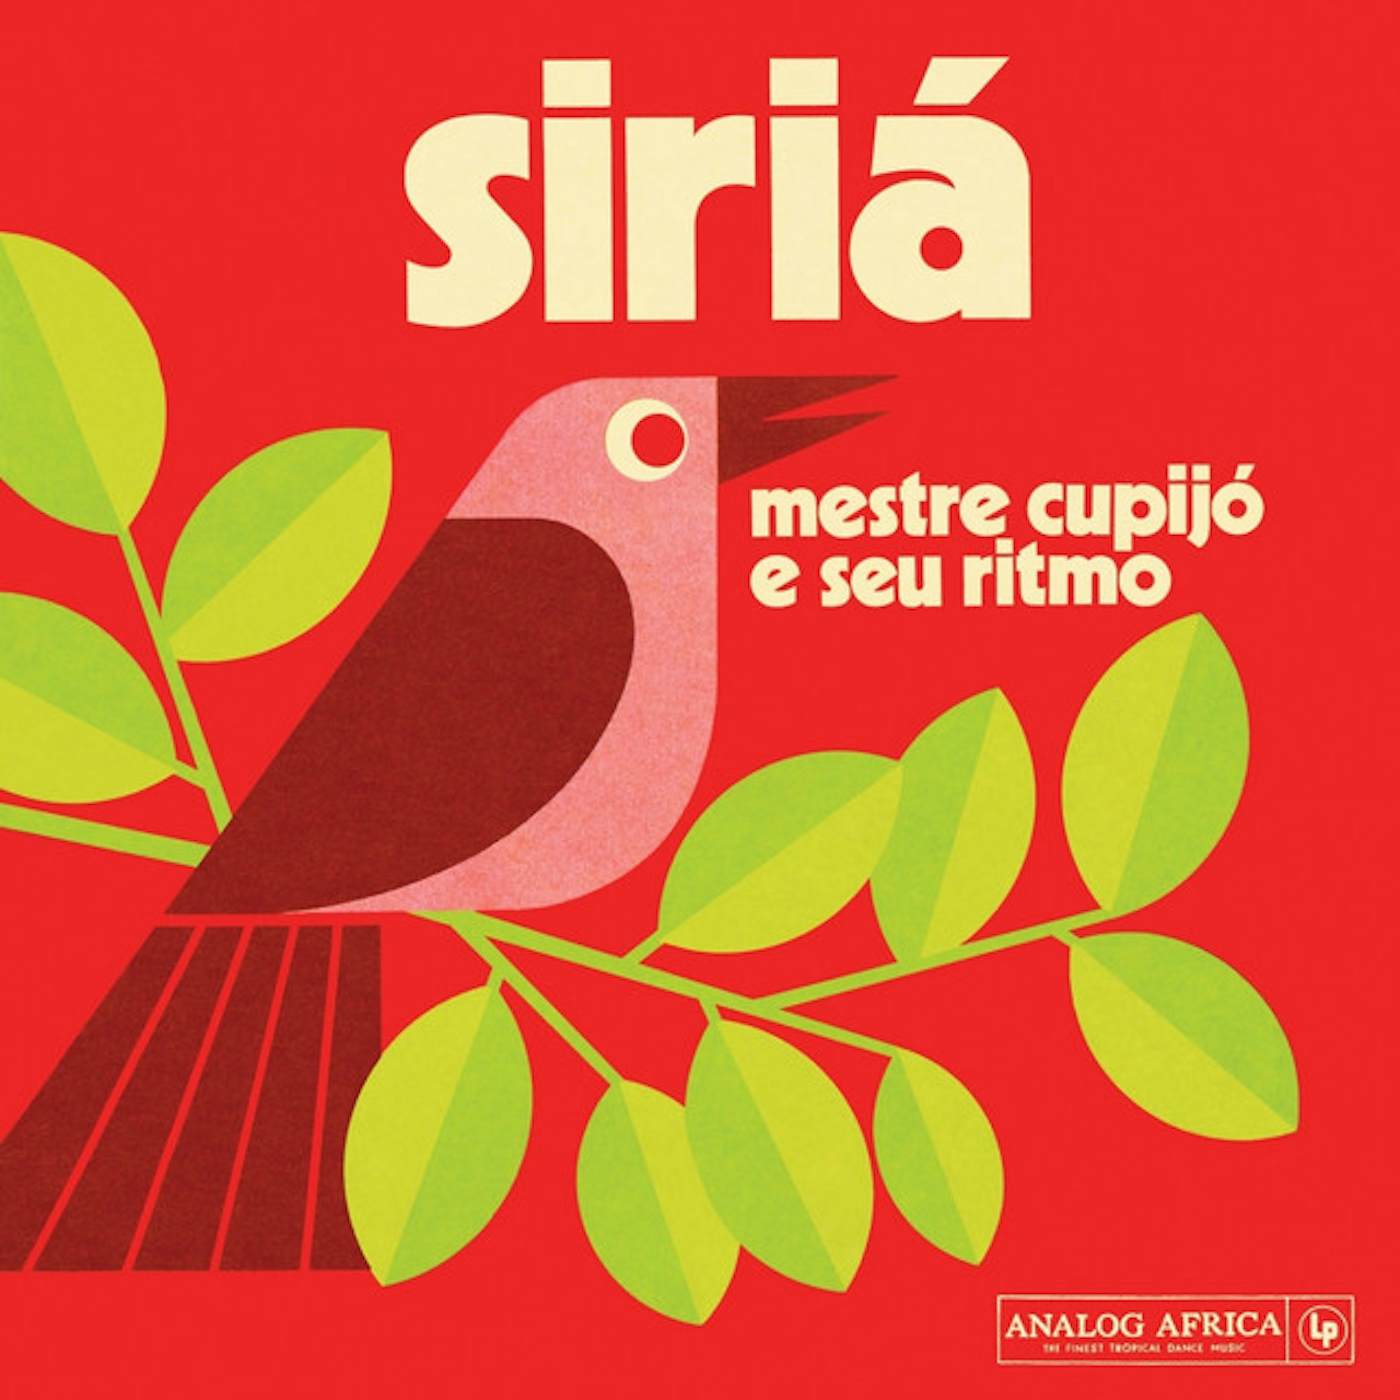 Mestre Cupijó e Seu Ritmo SIRIA Vinyl Record